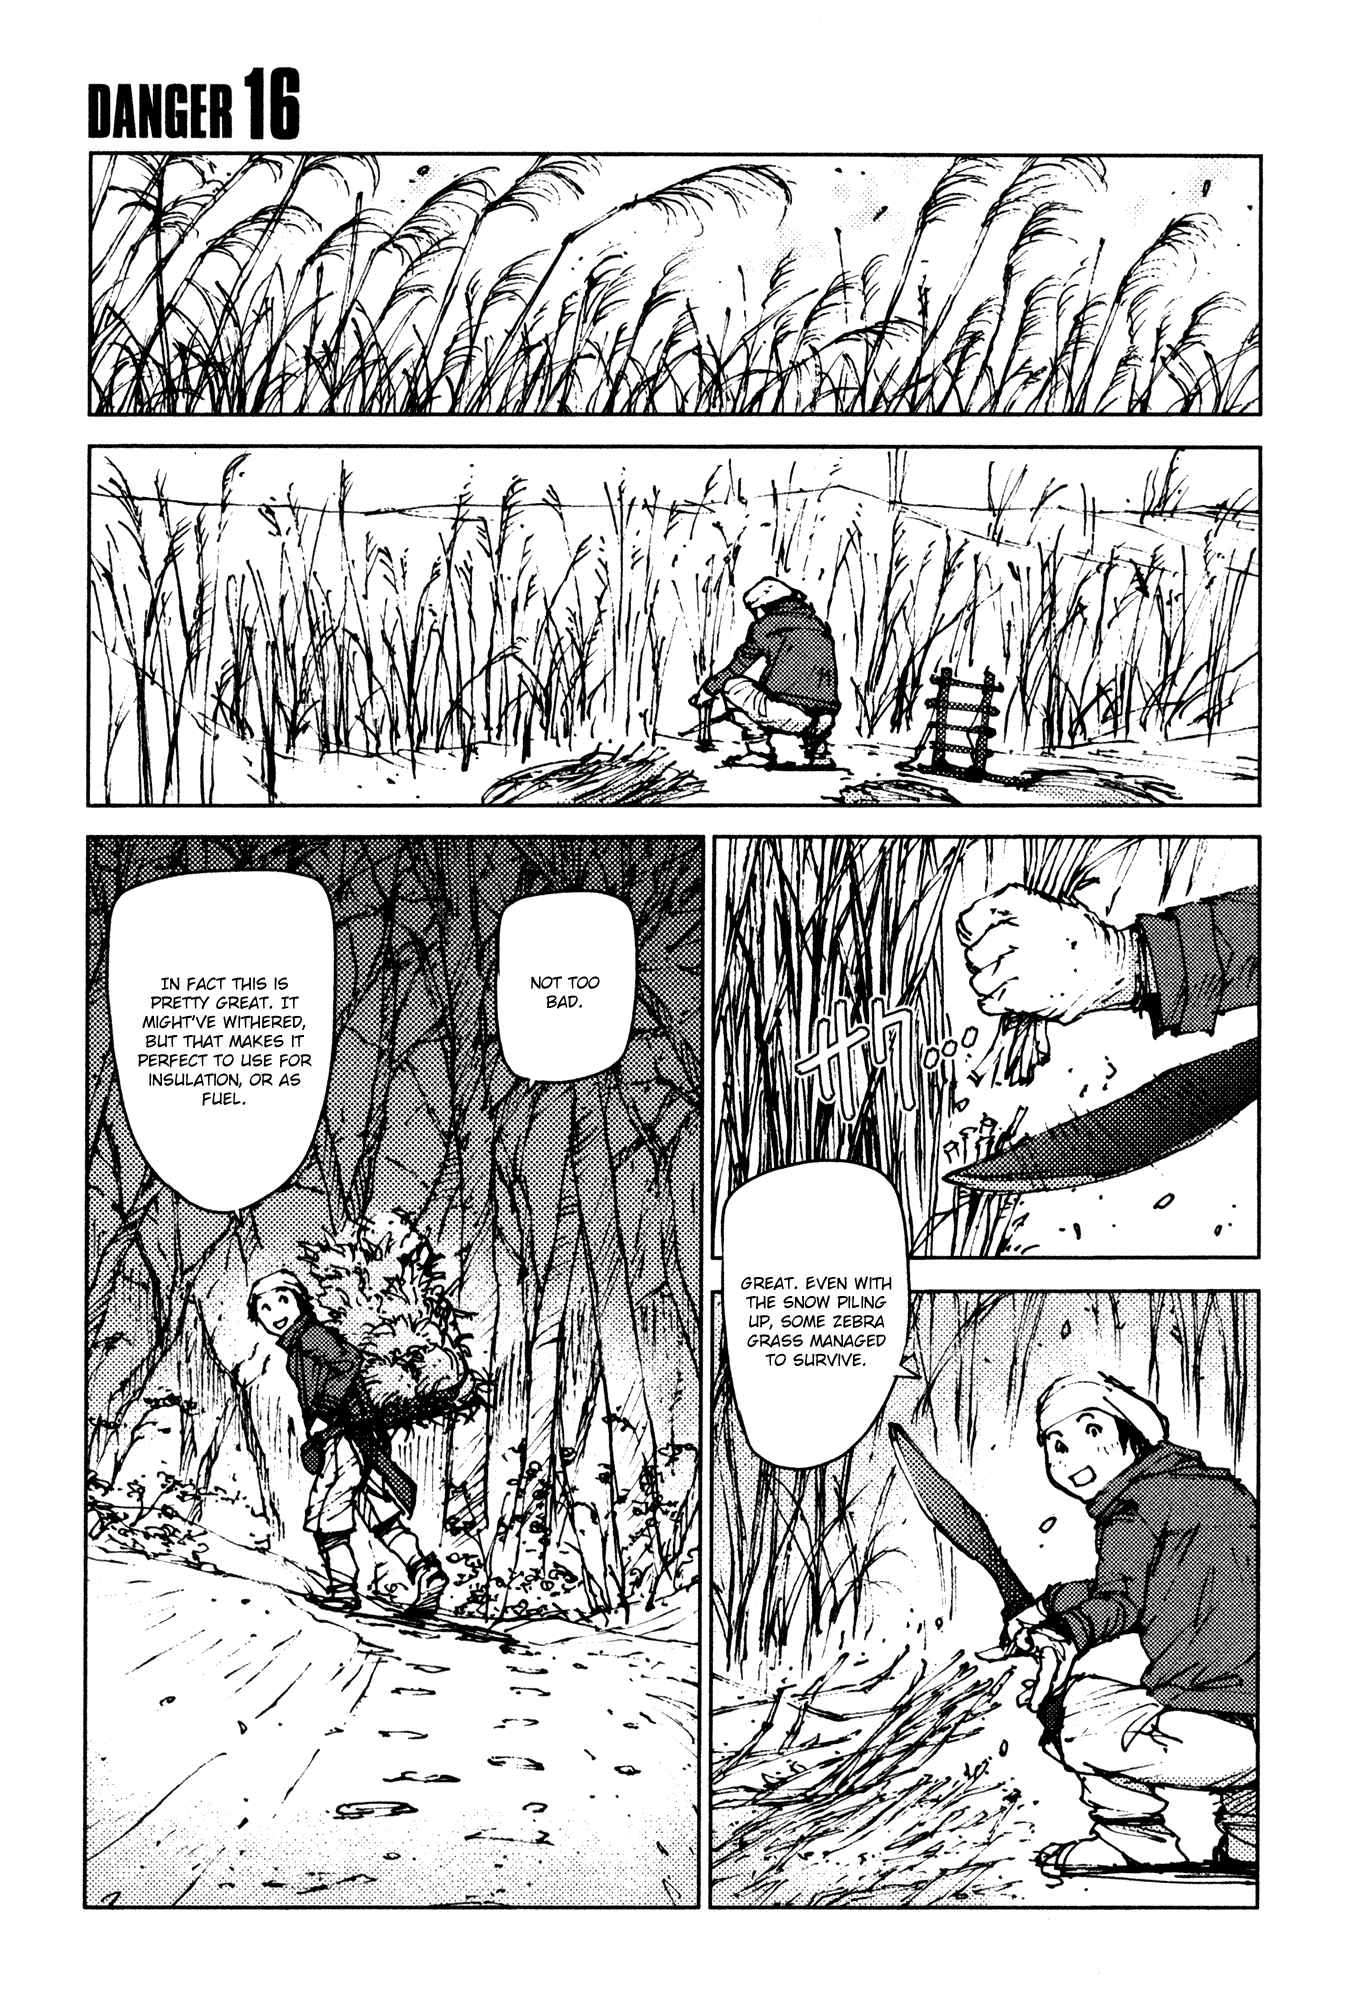 Survival: Shounen S no Kiroku Vol.1 Ch.16